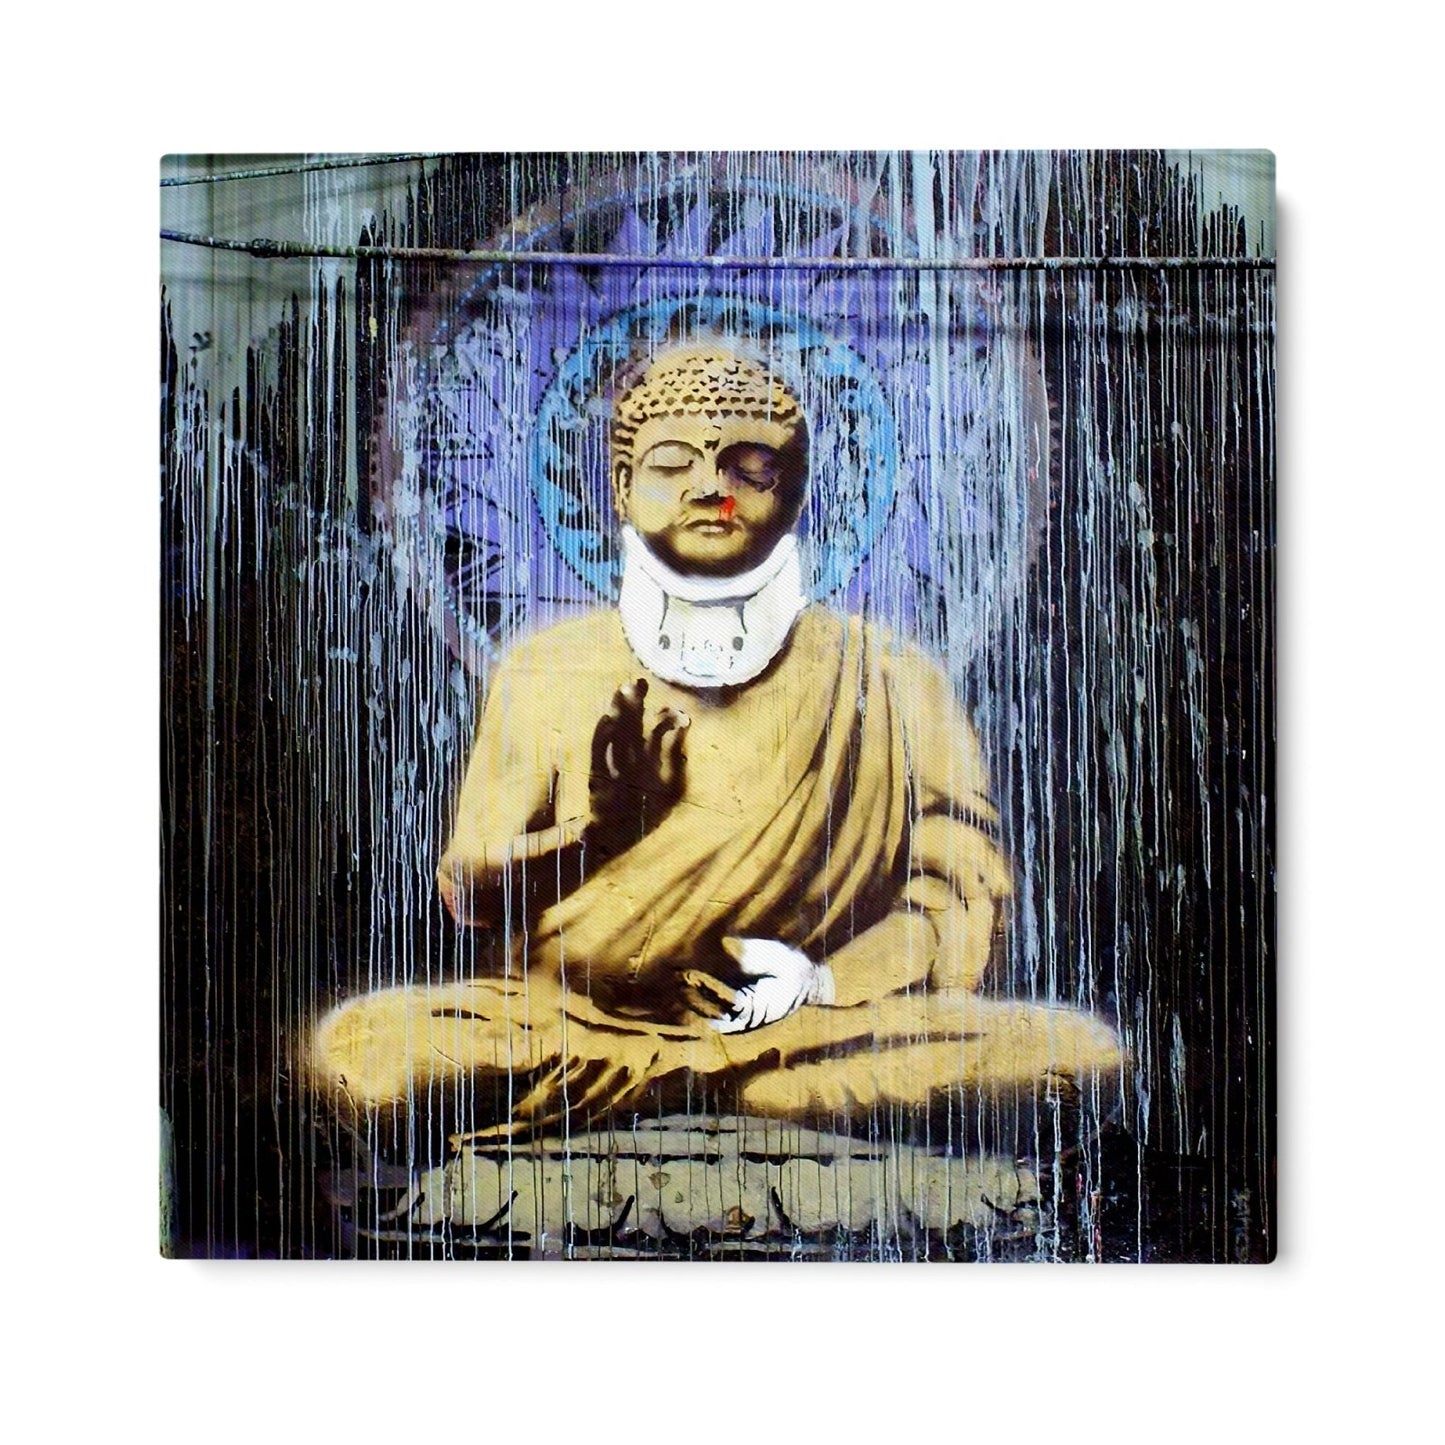 Zranený Budha, Banksy